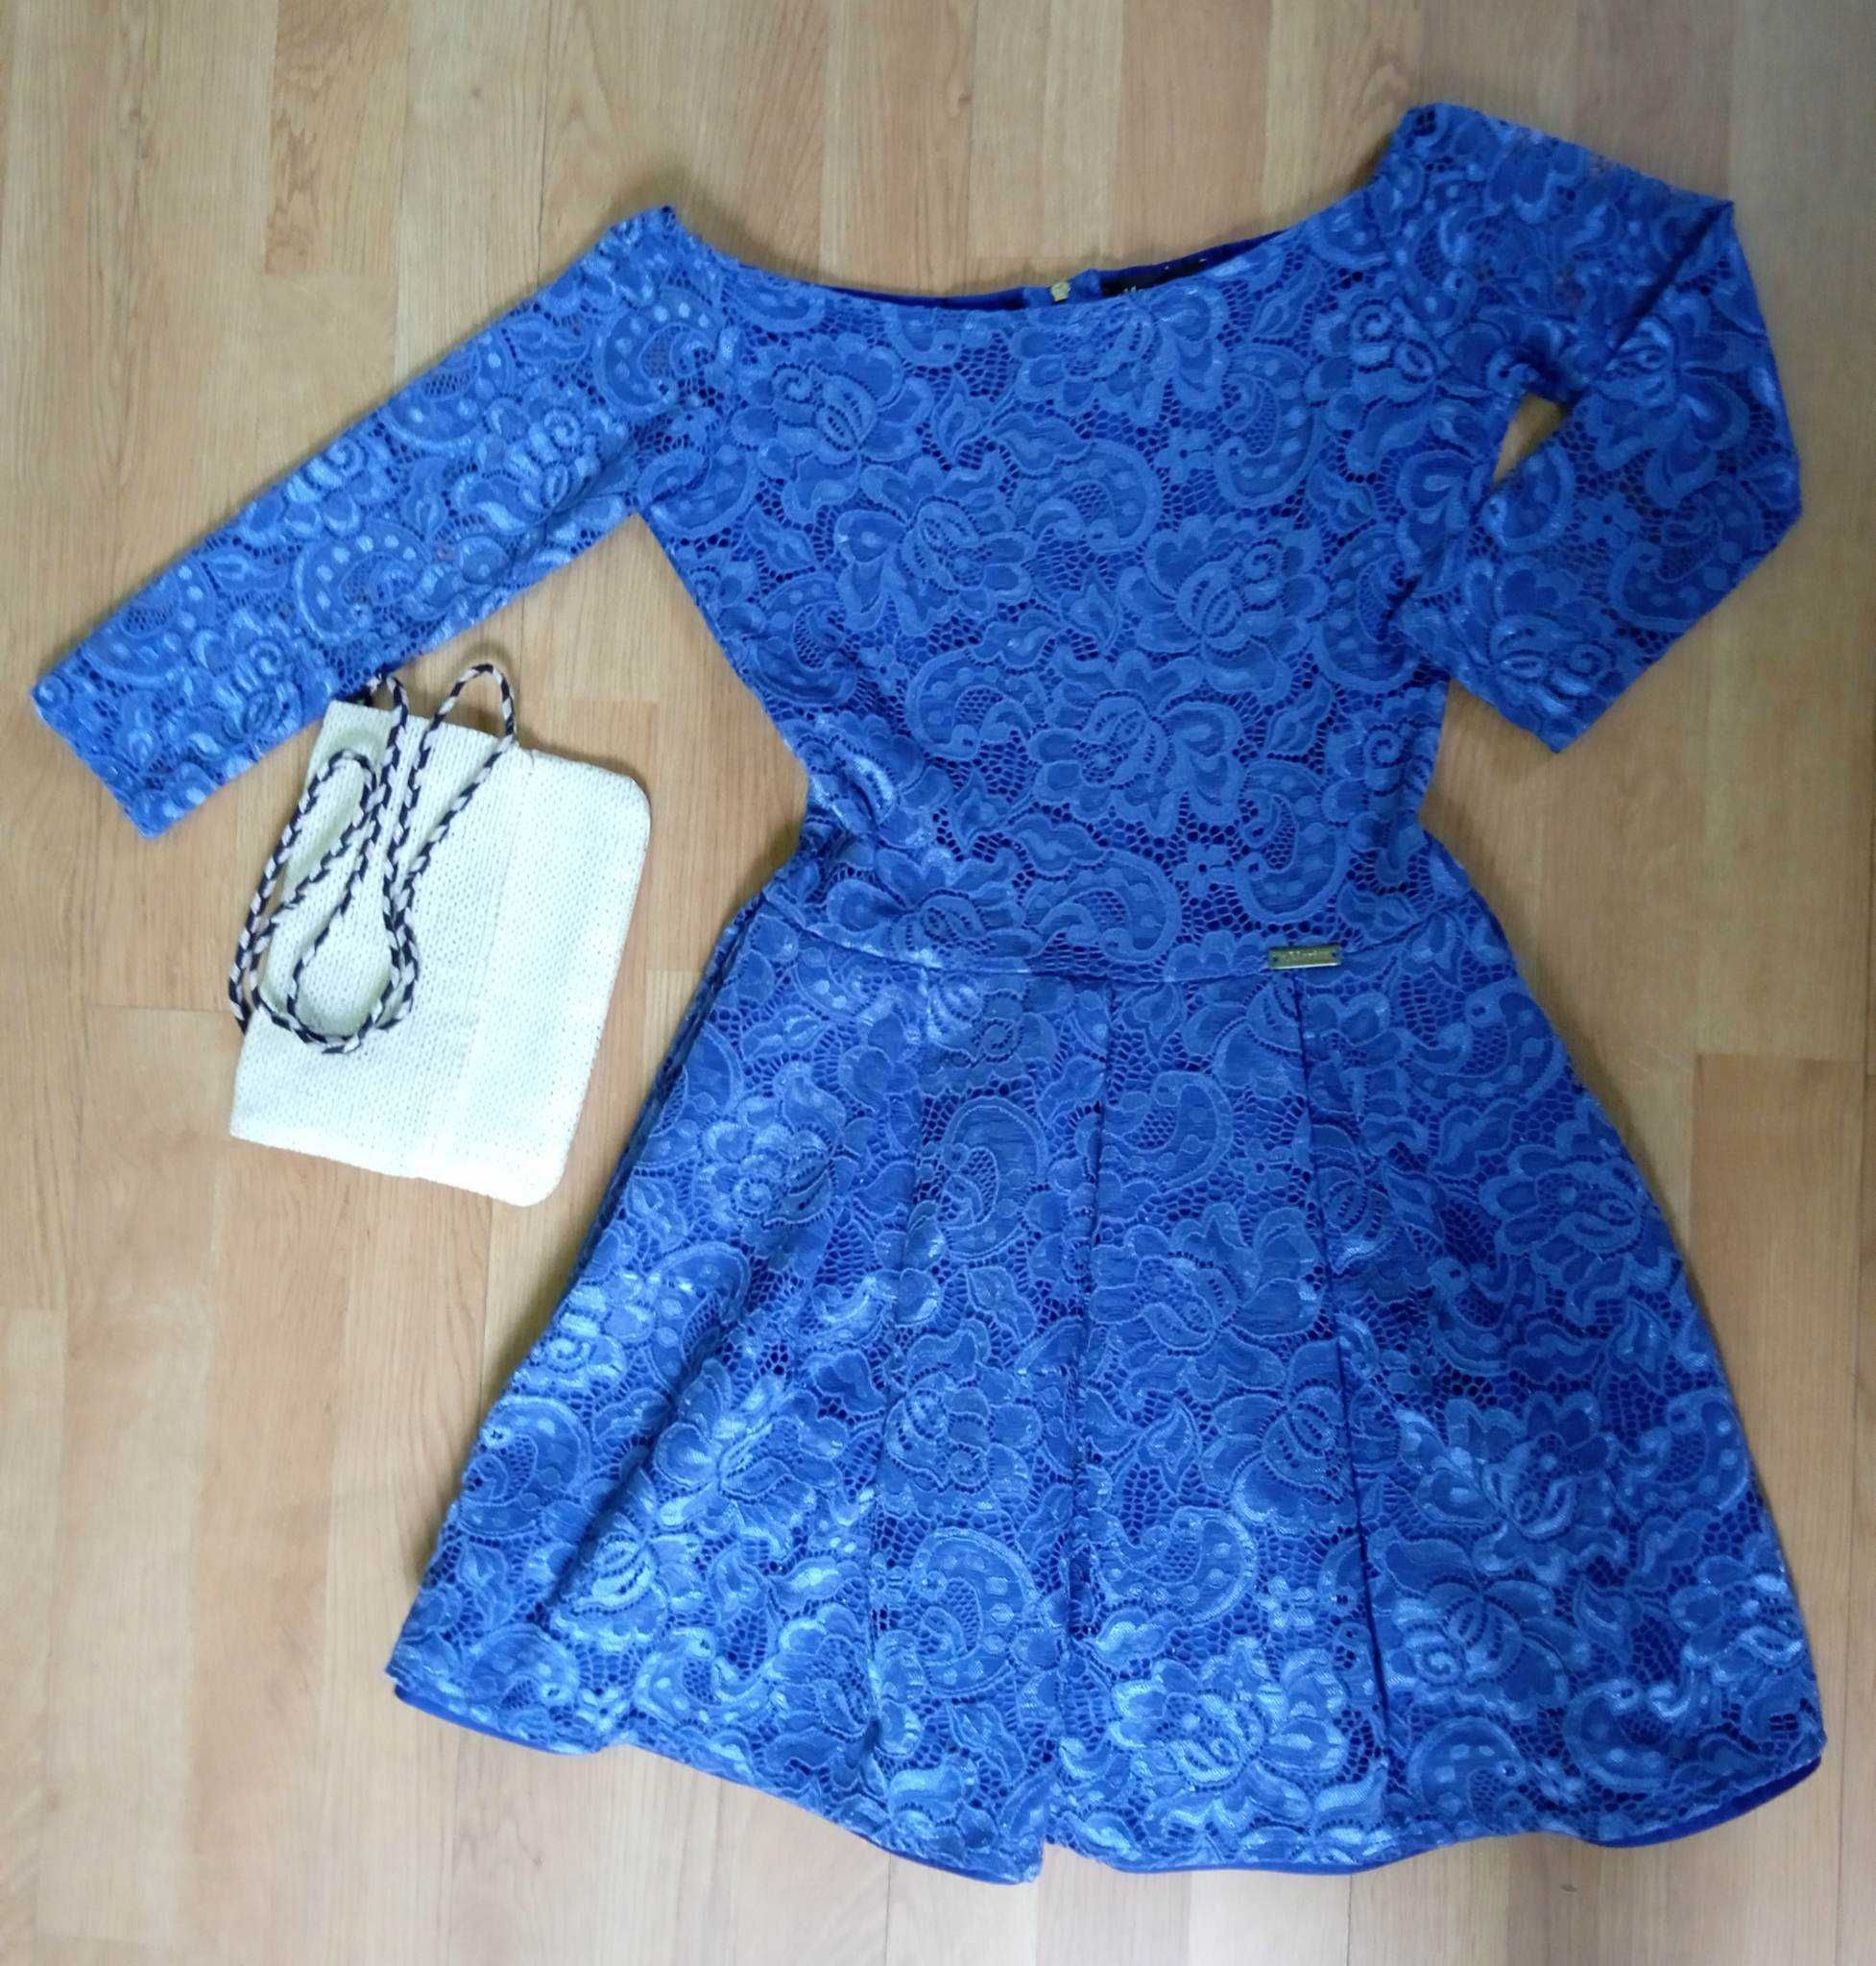 Sukienka s.Moriss rozkloszowana XS (34) niebieska